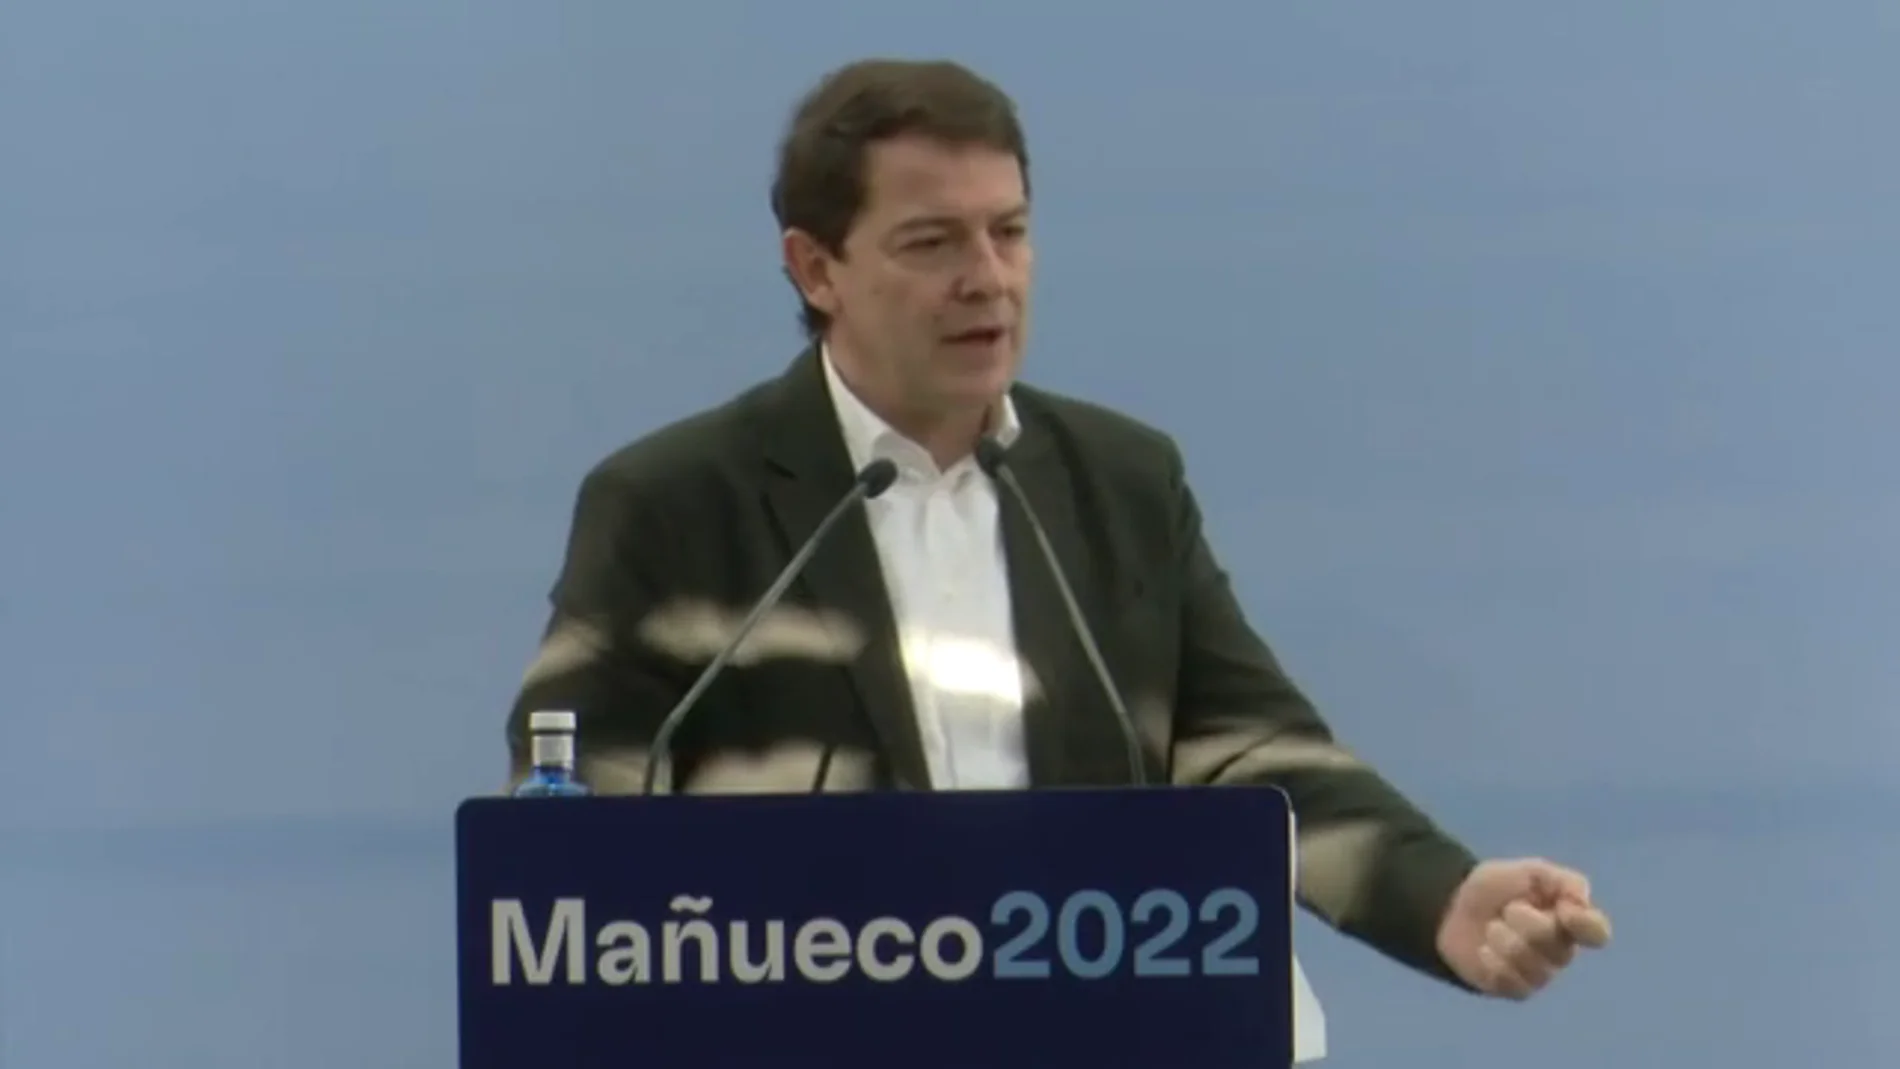 Mañueco se refiere al ministro Garzón como "el reincidente" por la nueva polémica de los 'tupper'